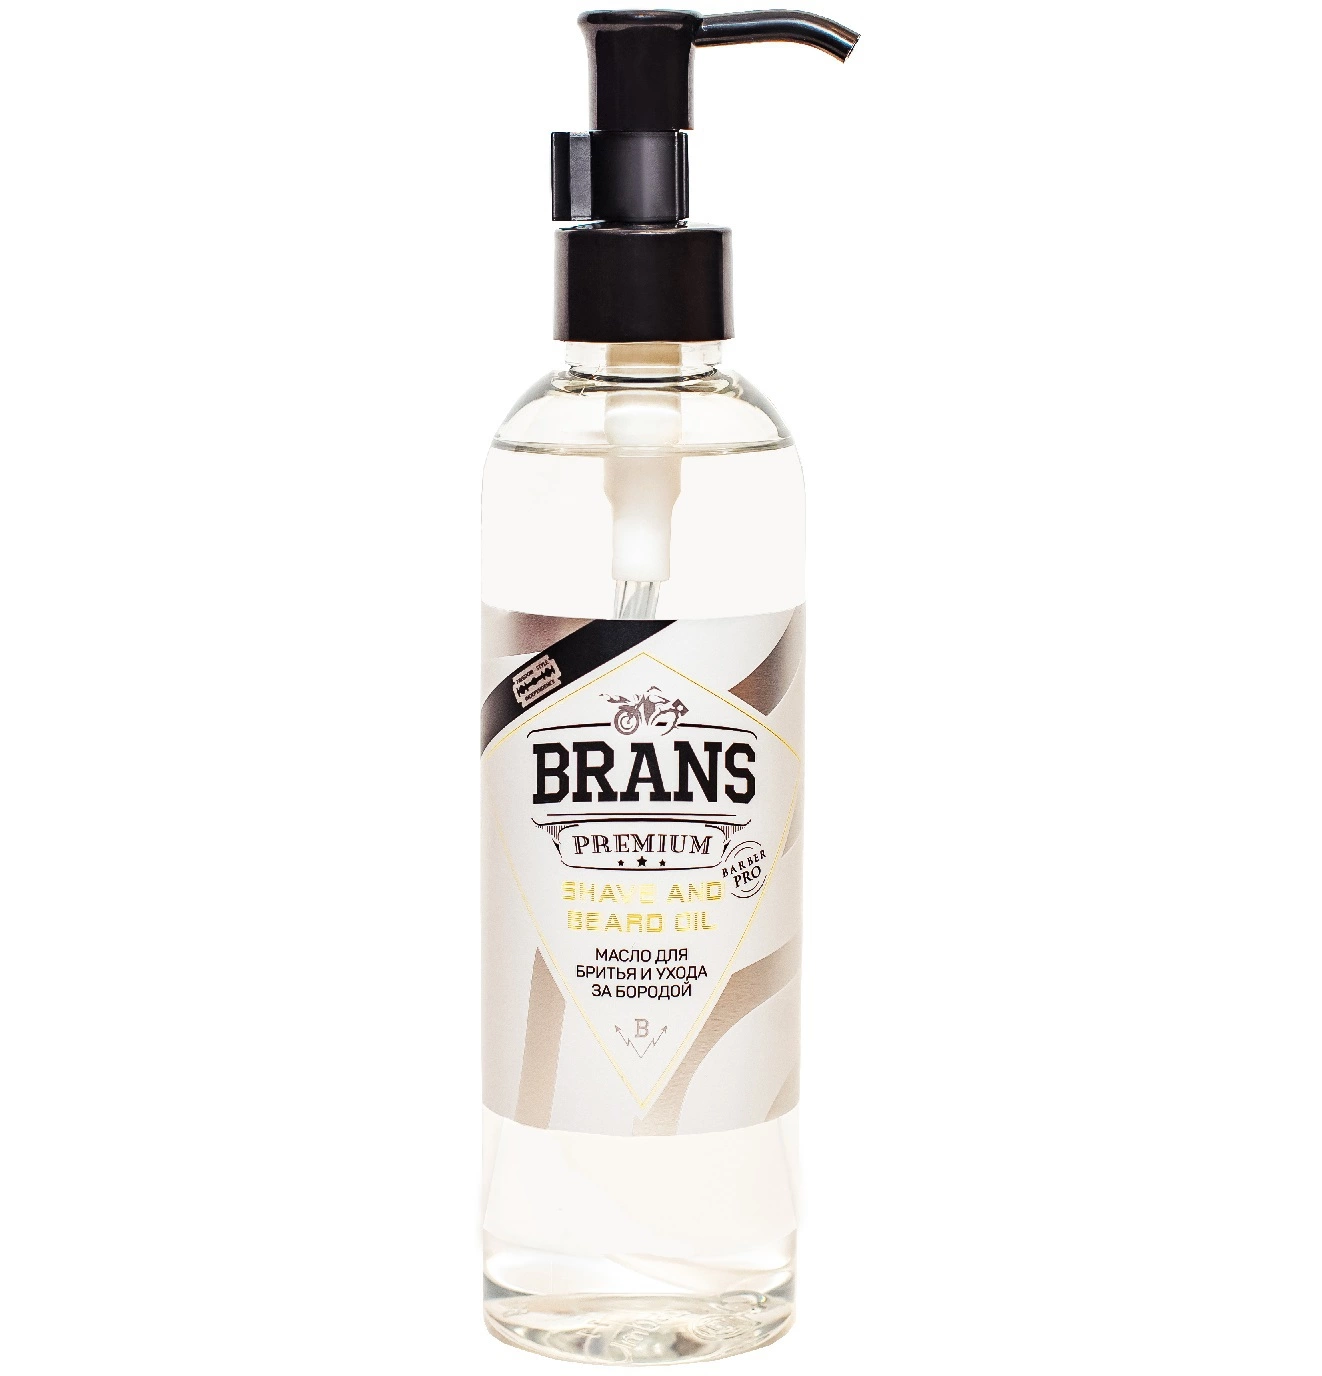 Brans Premium Argan Beard Oil - Универсальное аргановое масло для бритья и ухода за бородой 250 мл